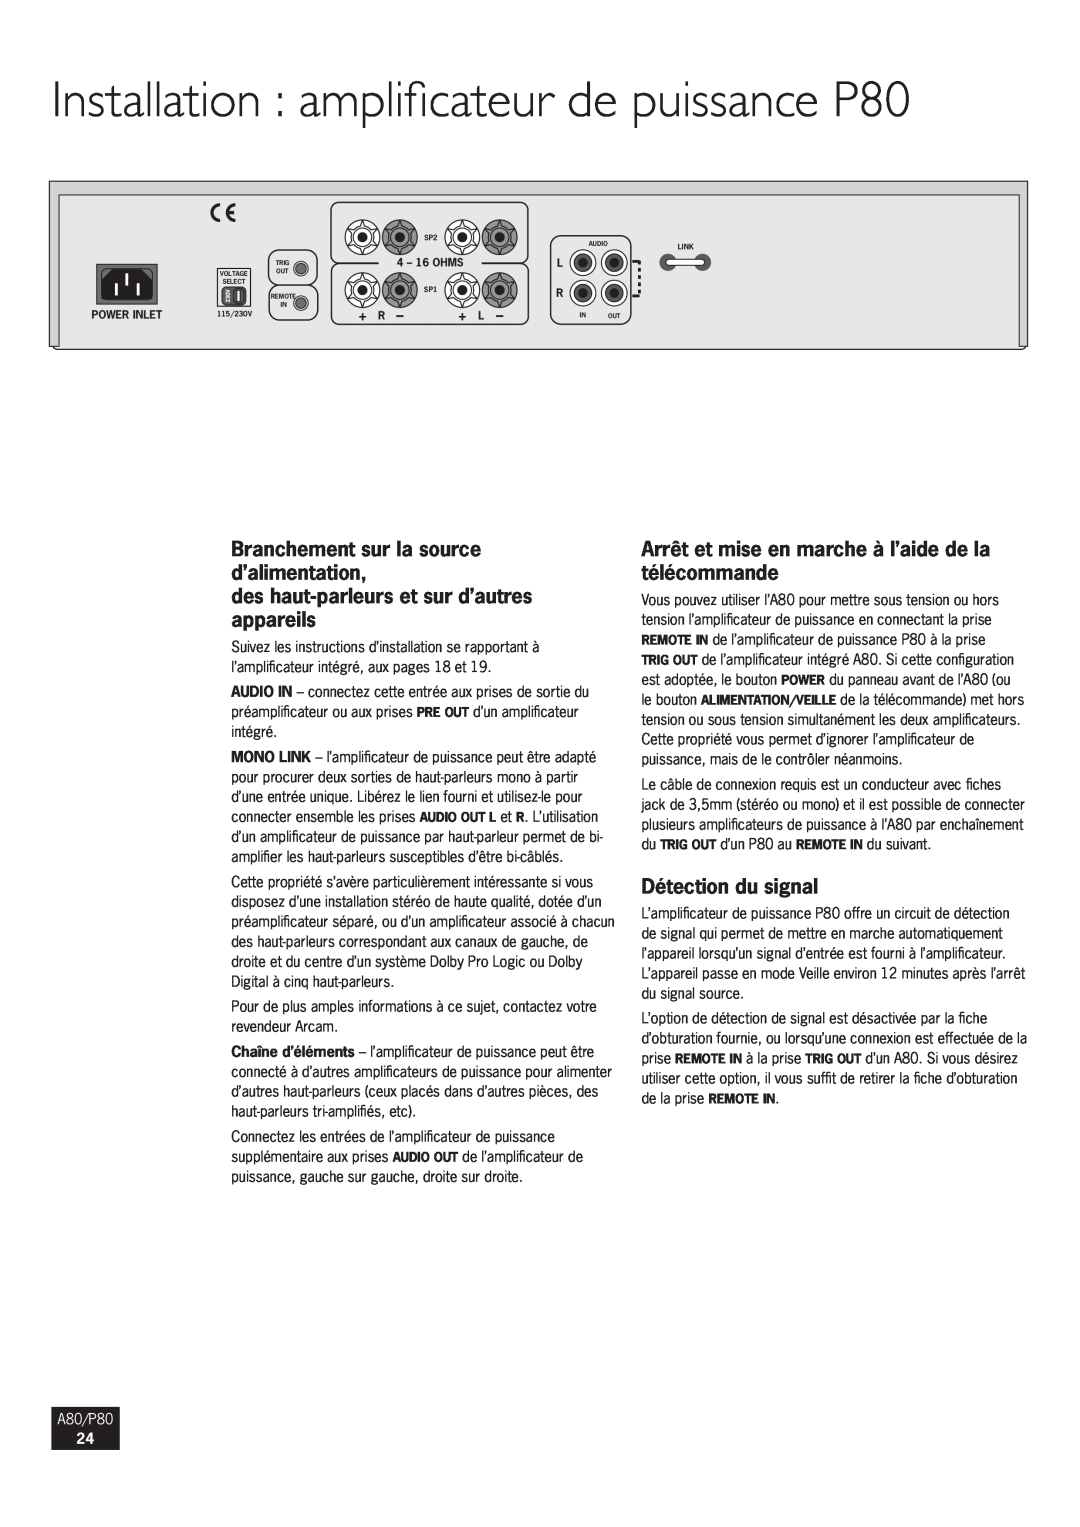 Arcam A80 Installation amplificateur de puissance P80, Branchement sur la source d’alimentation, Détection du signal, + R 